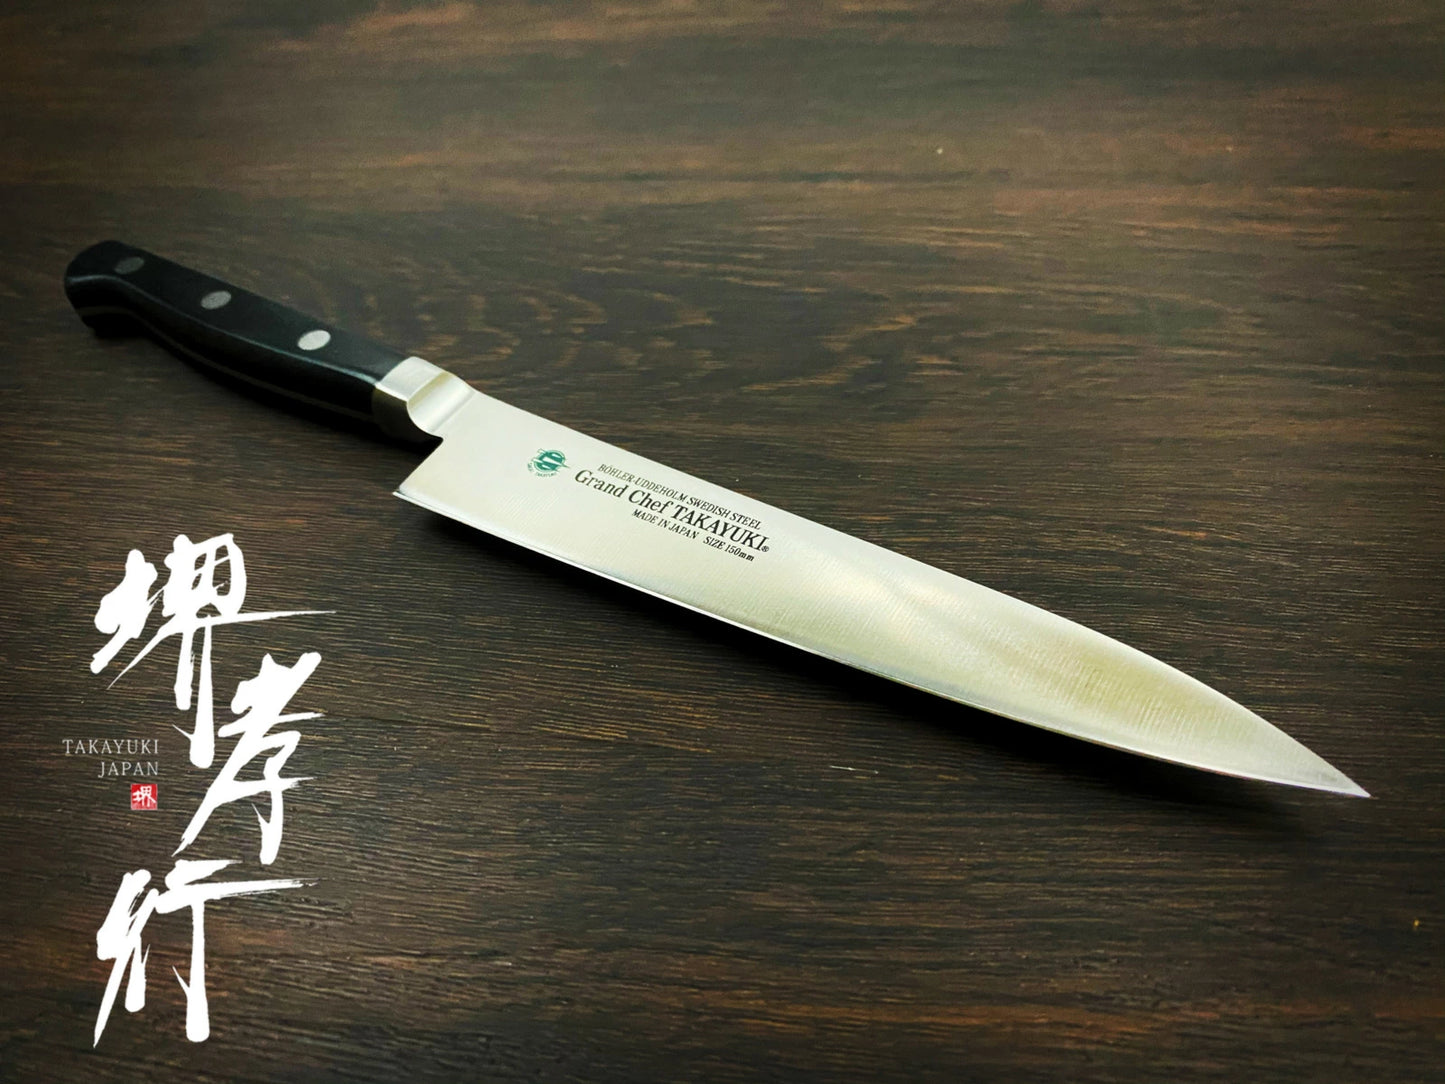 Free ship - Thương hiệu Sakai Takayuki Grand Chef Thép Thụy điển Dao nhỏ đa năng Petty dao Nhật 150mm